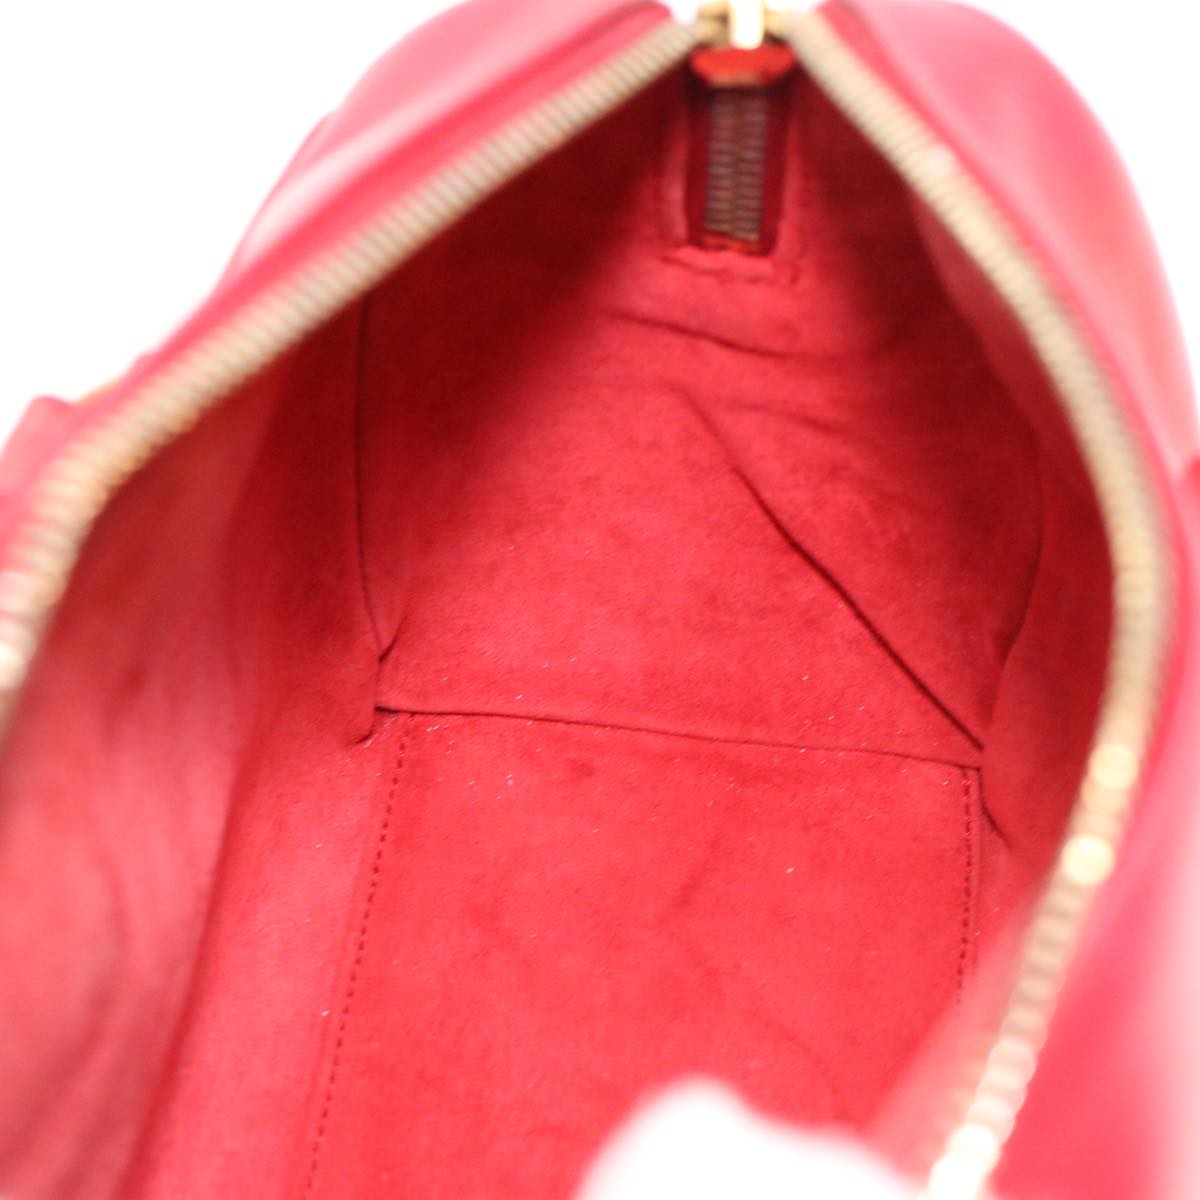 SAINT LAURENT Shoulder Bag Leather 2way Red Auth am4031